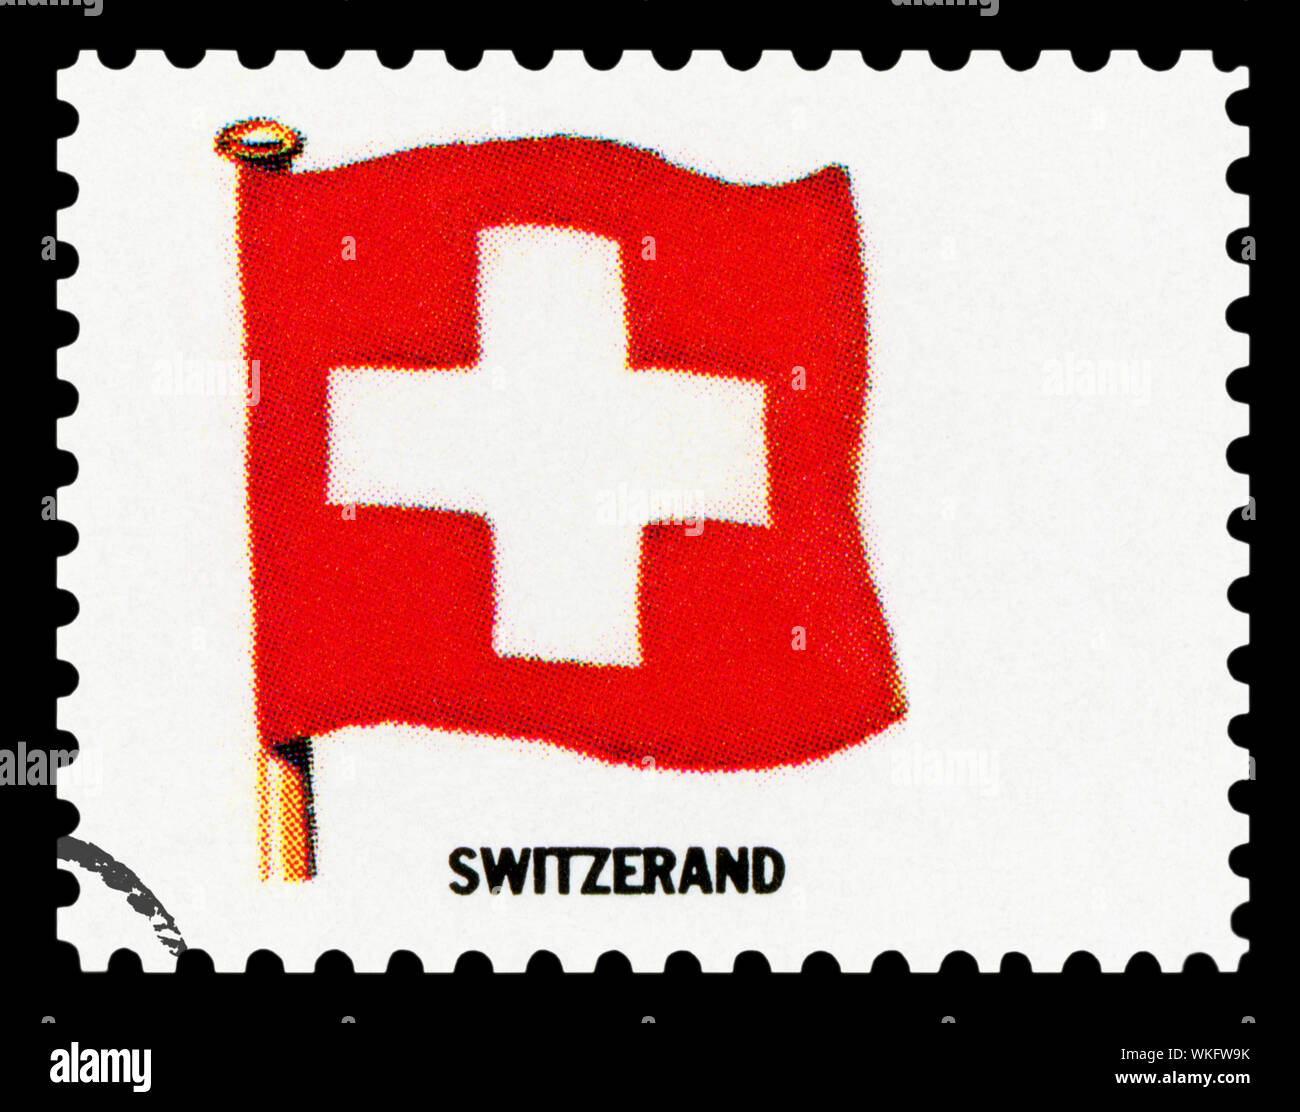 Schweiz Flagge - Briefmarke isoliert auf schwarzen Hintergrund. Stockfoto